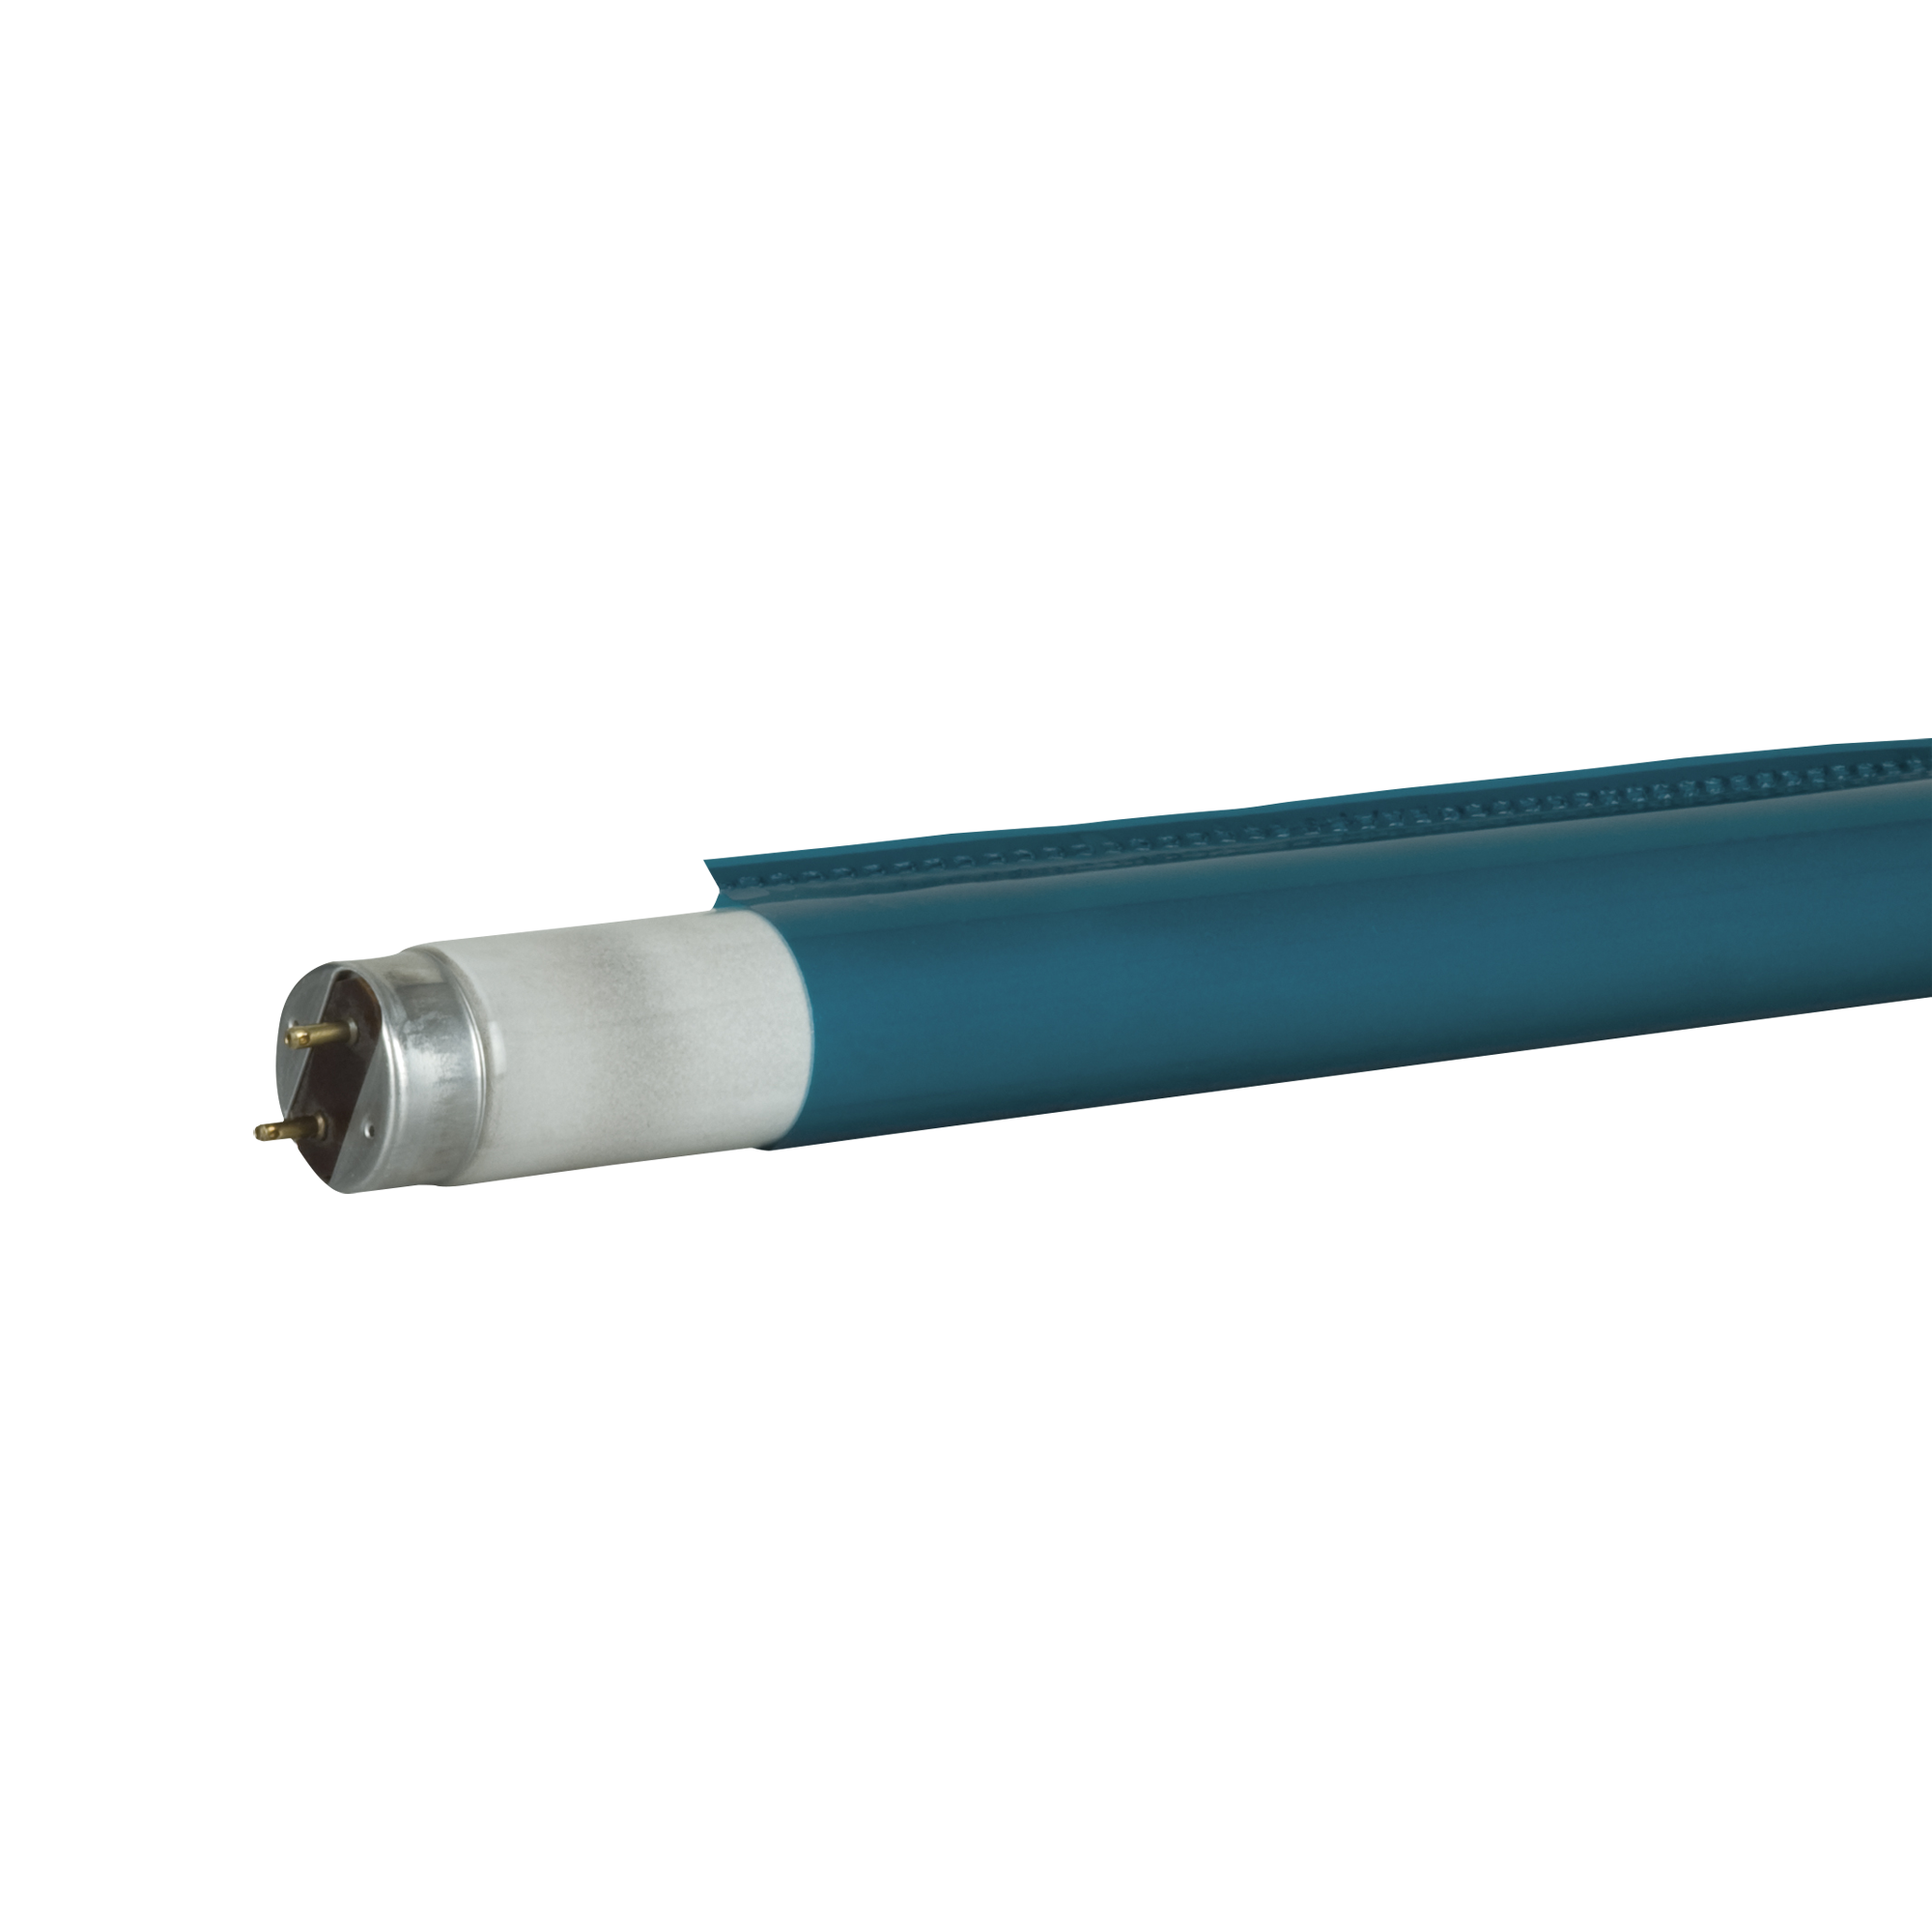 Showgear C-Tube T8 1200 mm 115C - Pfauenblau - Schnell einsetzbarer Farbfilter